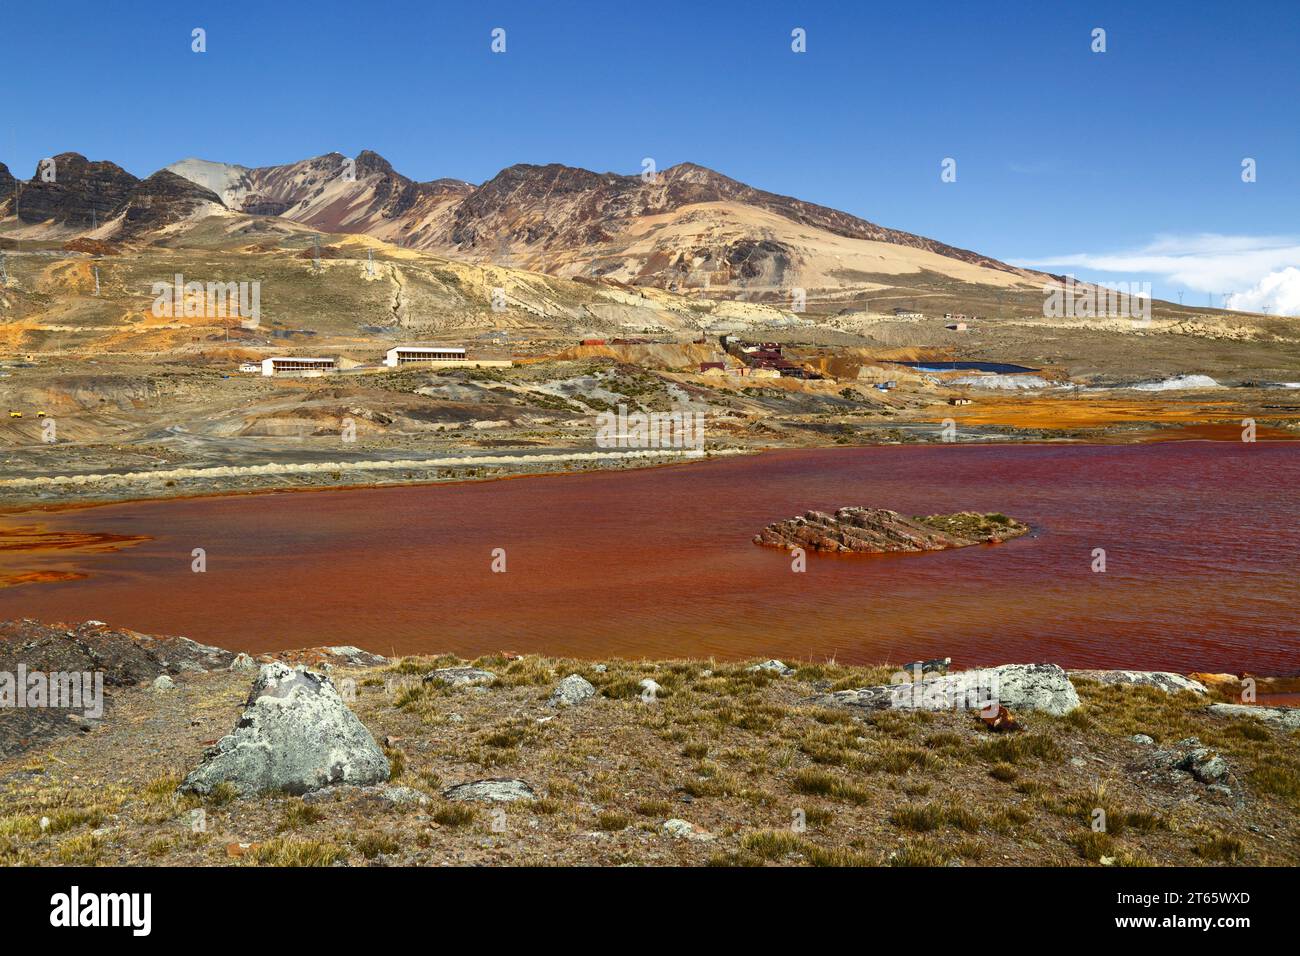 Vista a través del lago contaminado por el drenaje ácido de la mina y los residuos industriales de la mina de estaño cercana en Milluni (parte de la cual se puede ver en la orilla lejana y ladera de la montaña), cerca de La Paz, Bolivia. Las montañas son las estribaciones del macizo del monte Chacaltaya. Foto de stock